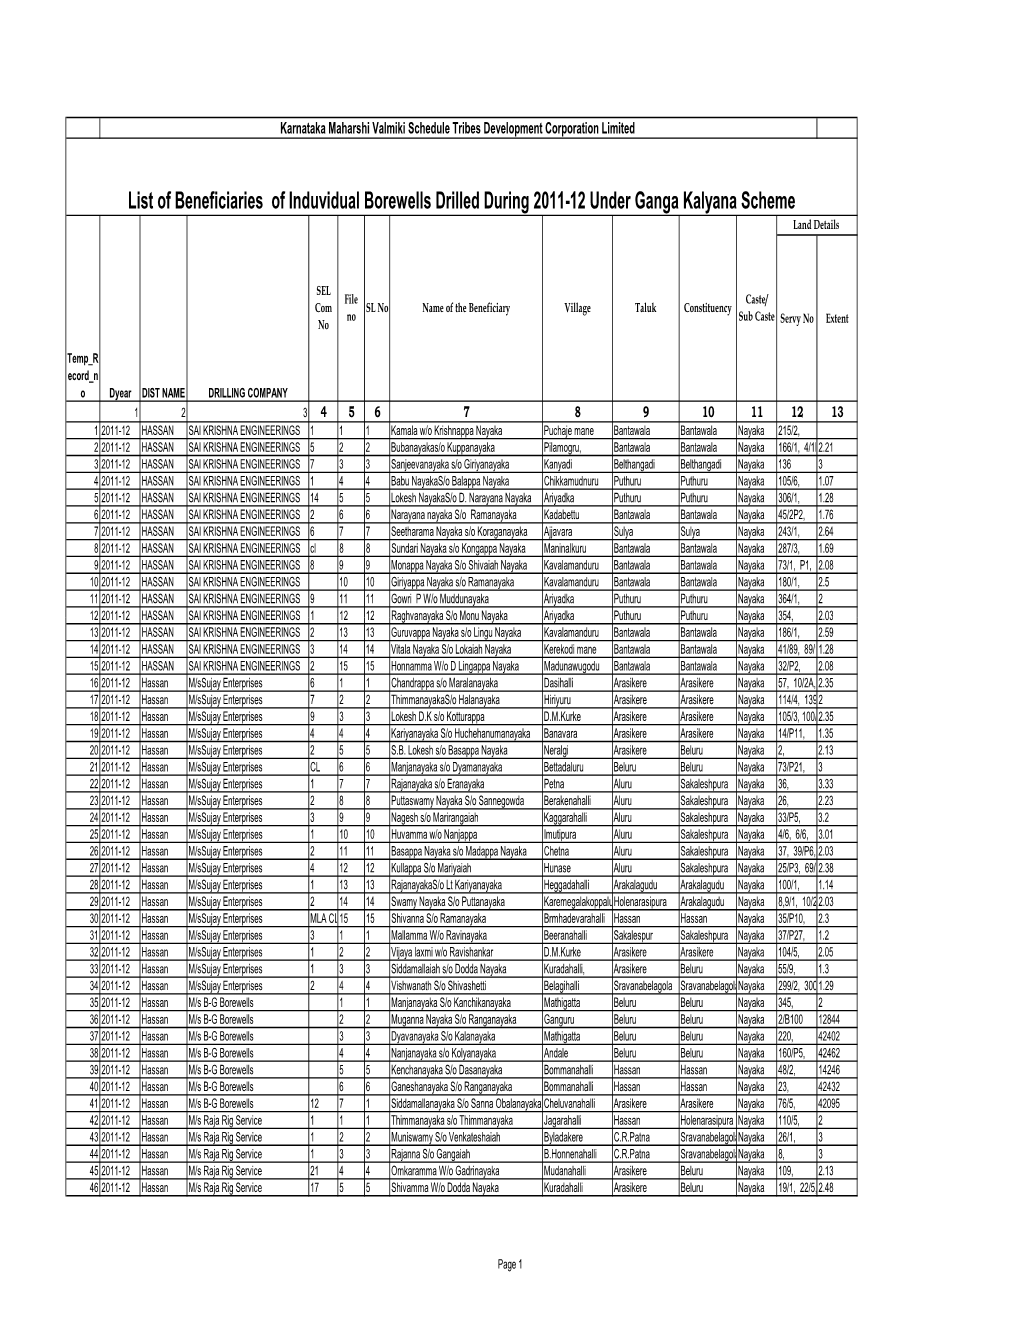 List of Beneficiaries of Induvidual Borewells Drilled During 2011-12 Under Ganga Kalyana Scheme Land Details